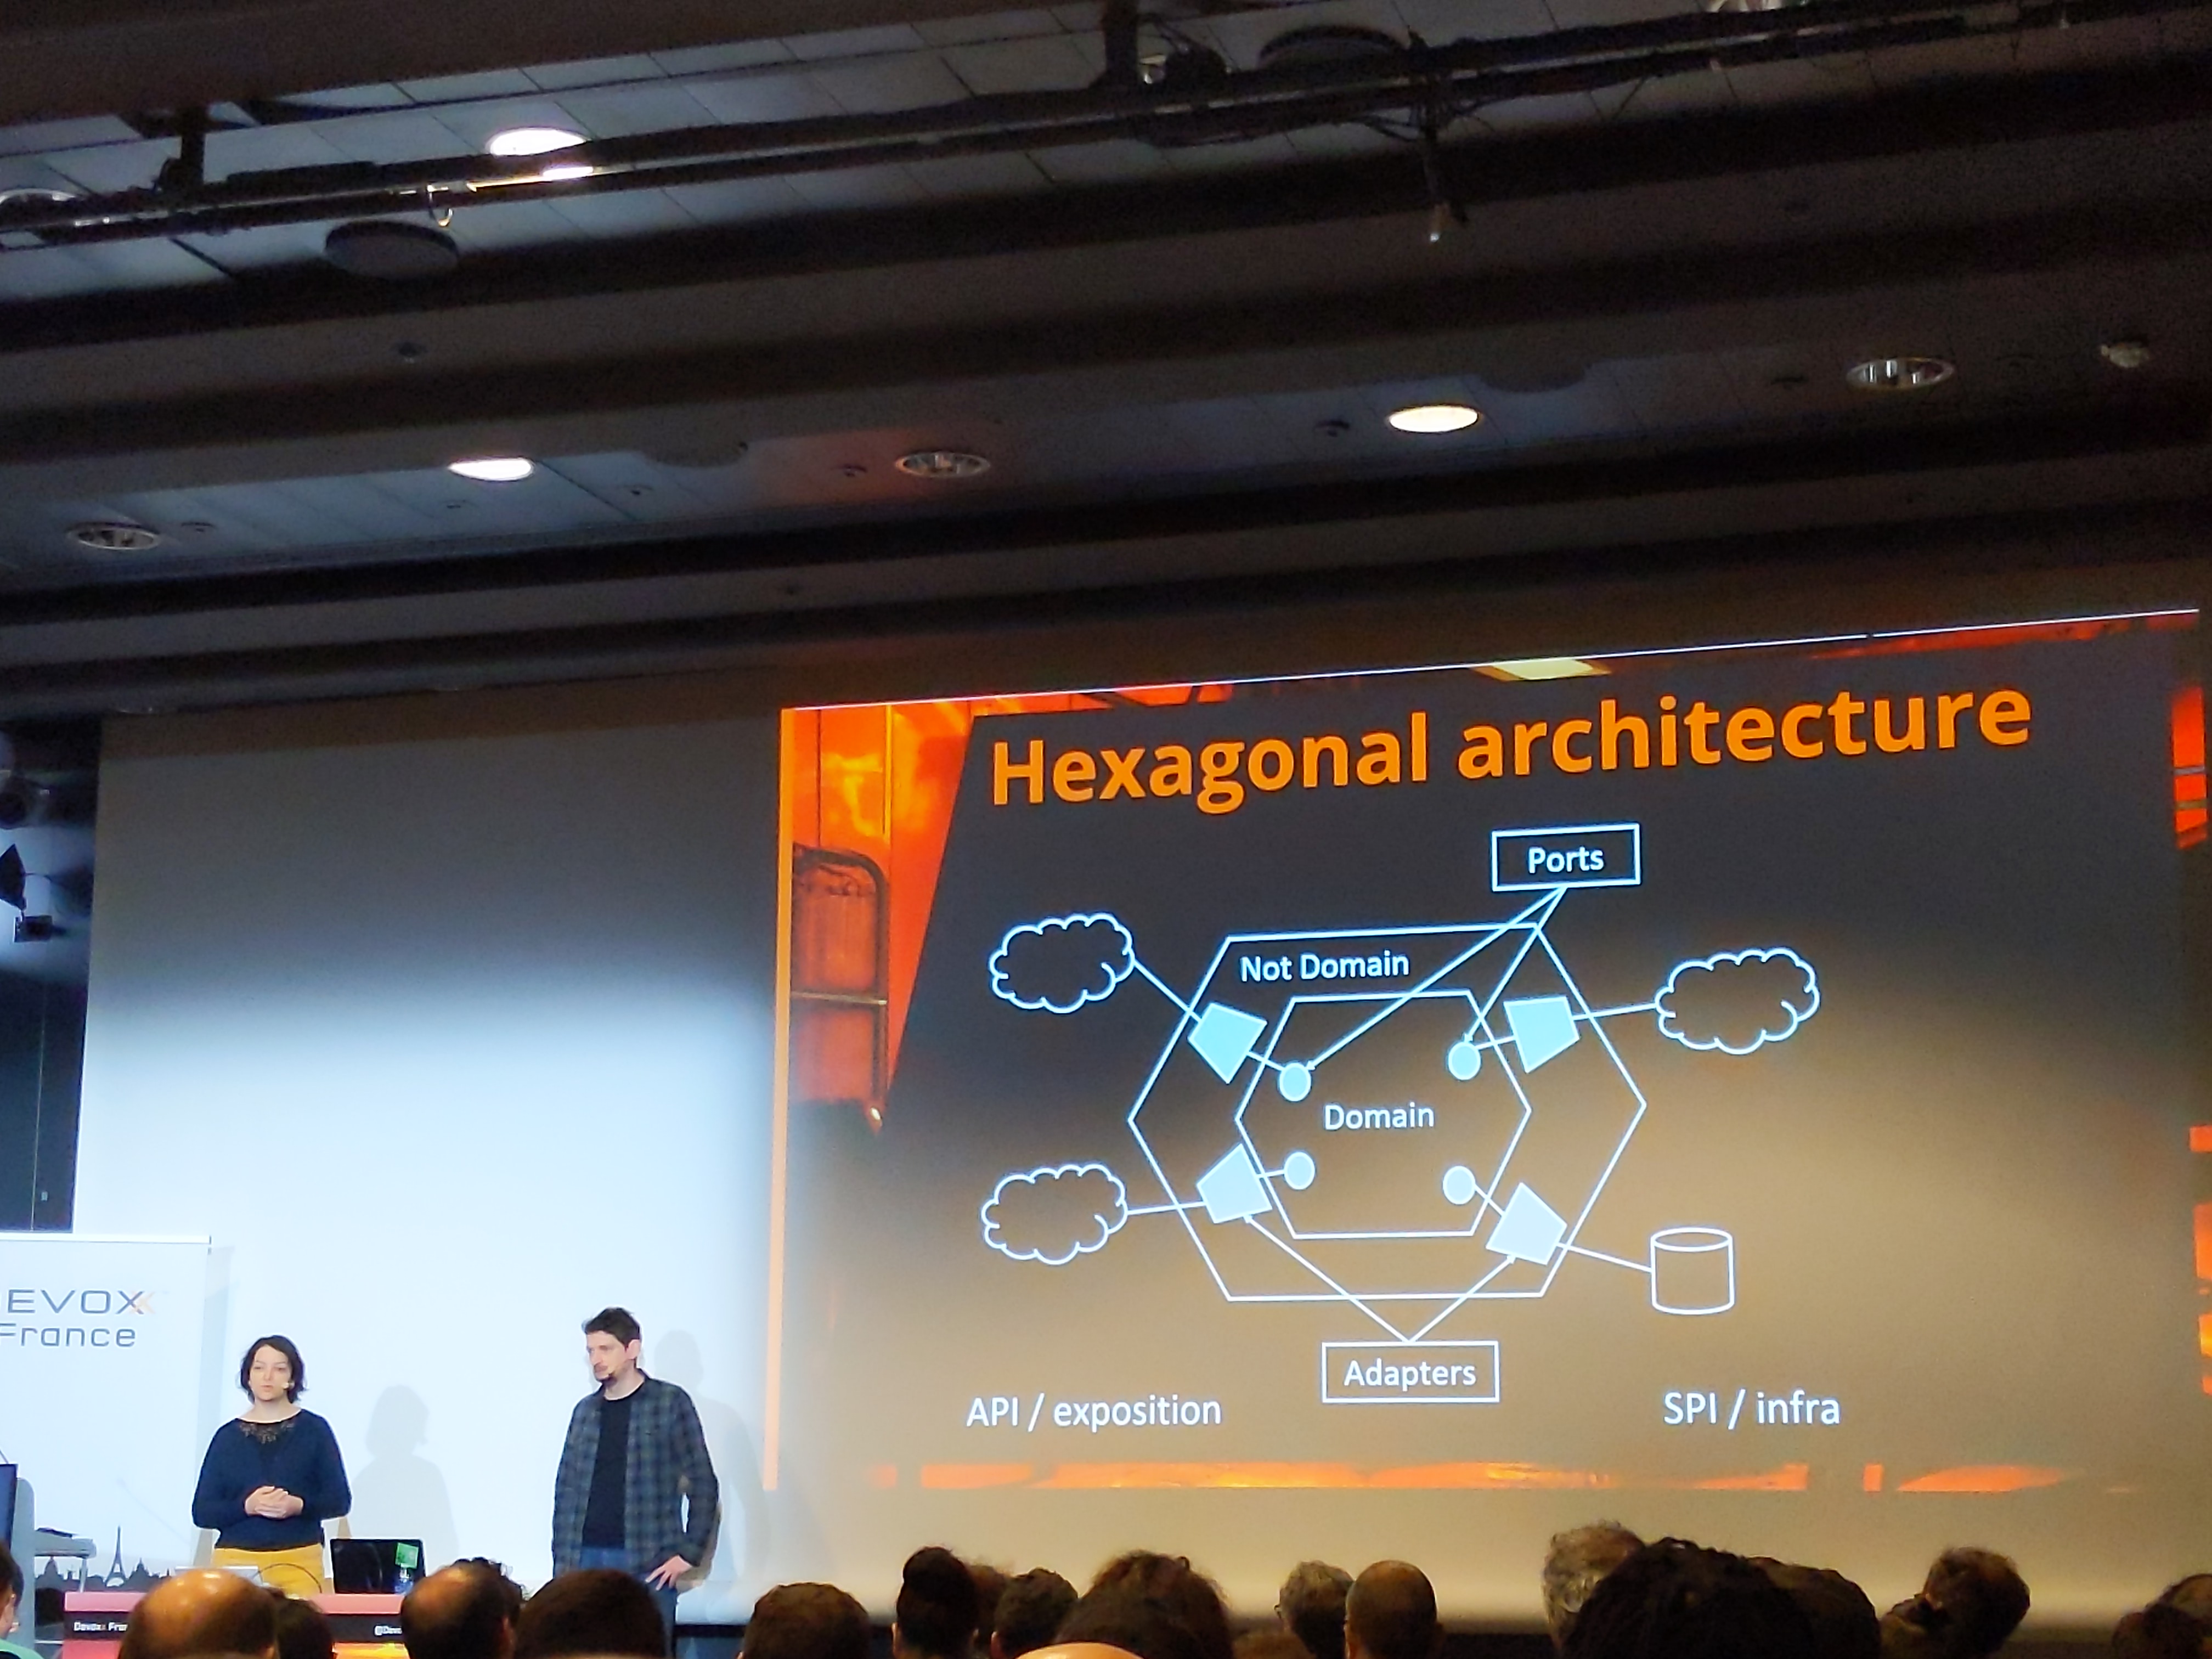 Schéma d'architecture hexagonale durant la présentation DDD